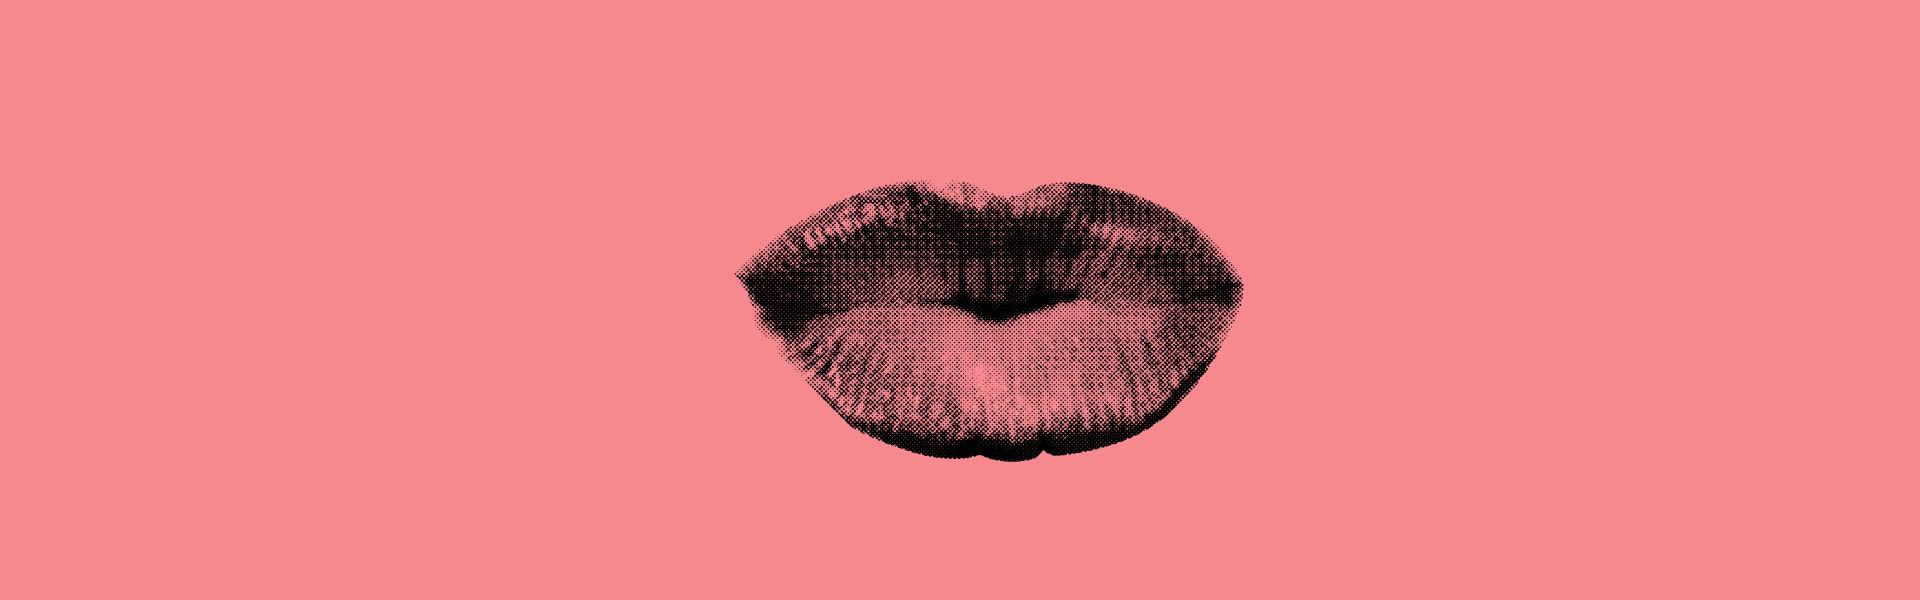 המדע מאחורי הנשיקה הרומנטית / אילוסטרציה: Shutterstock